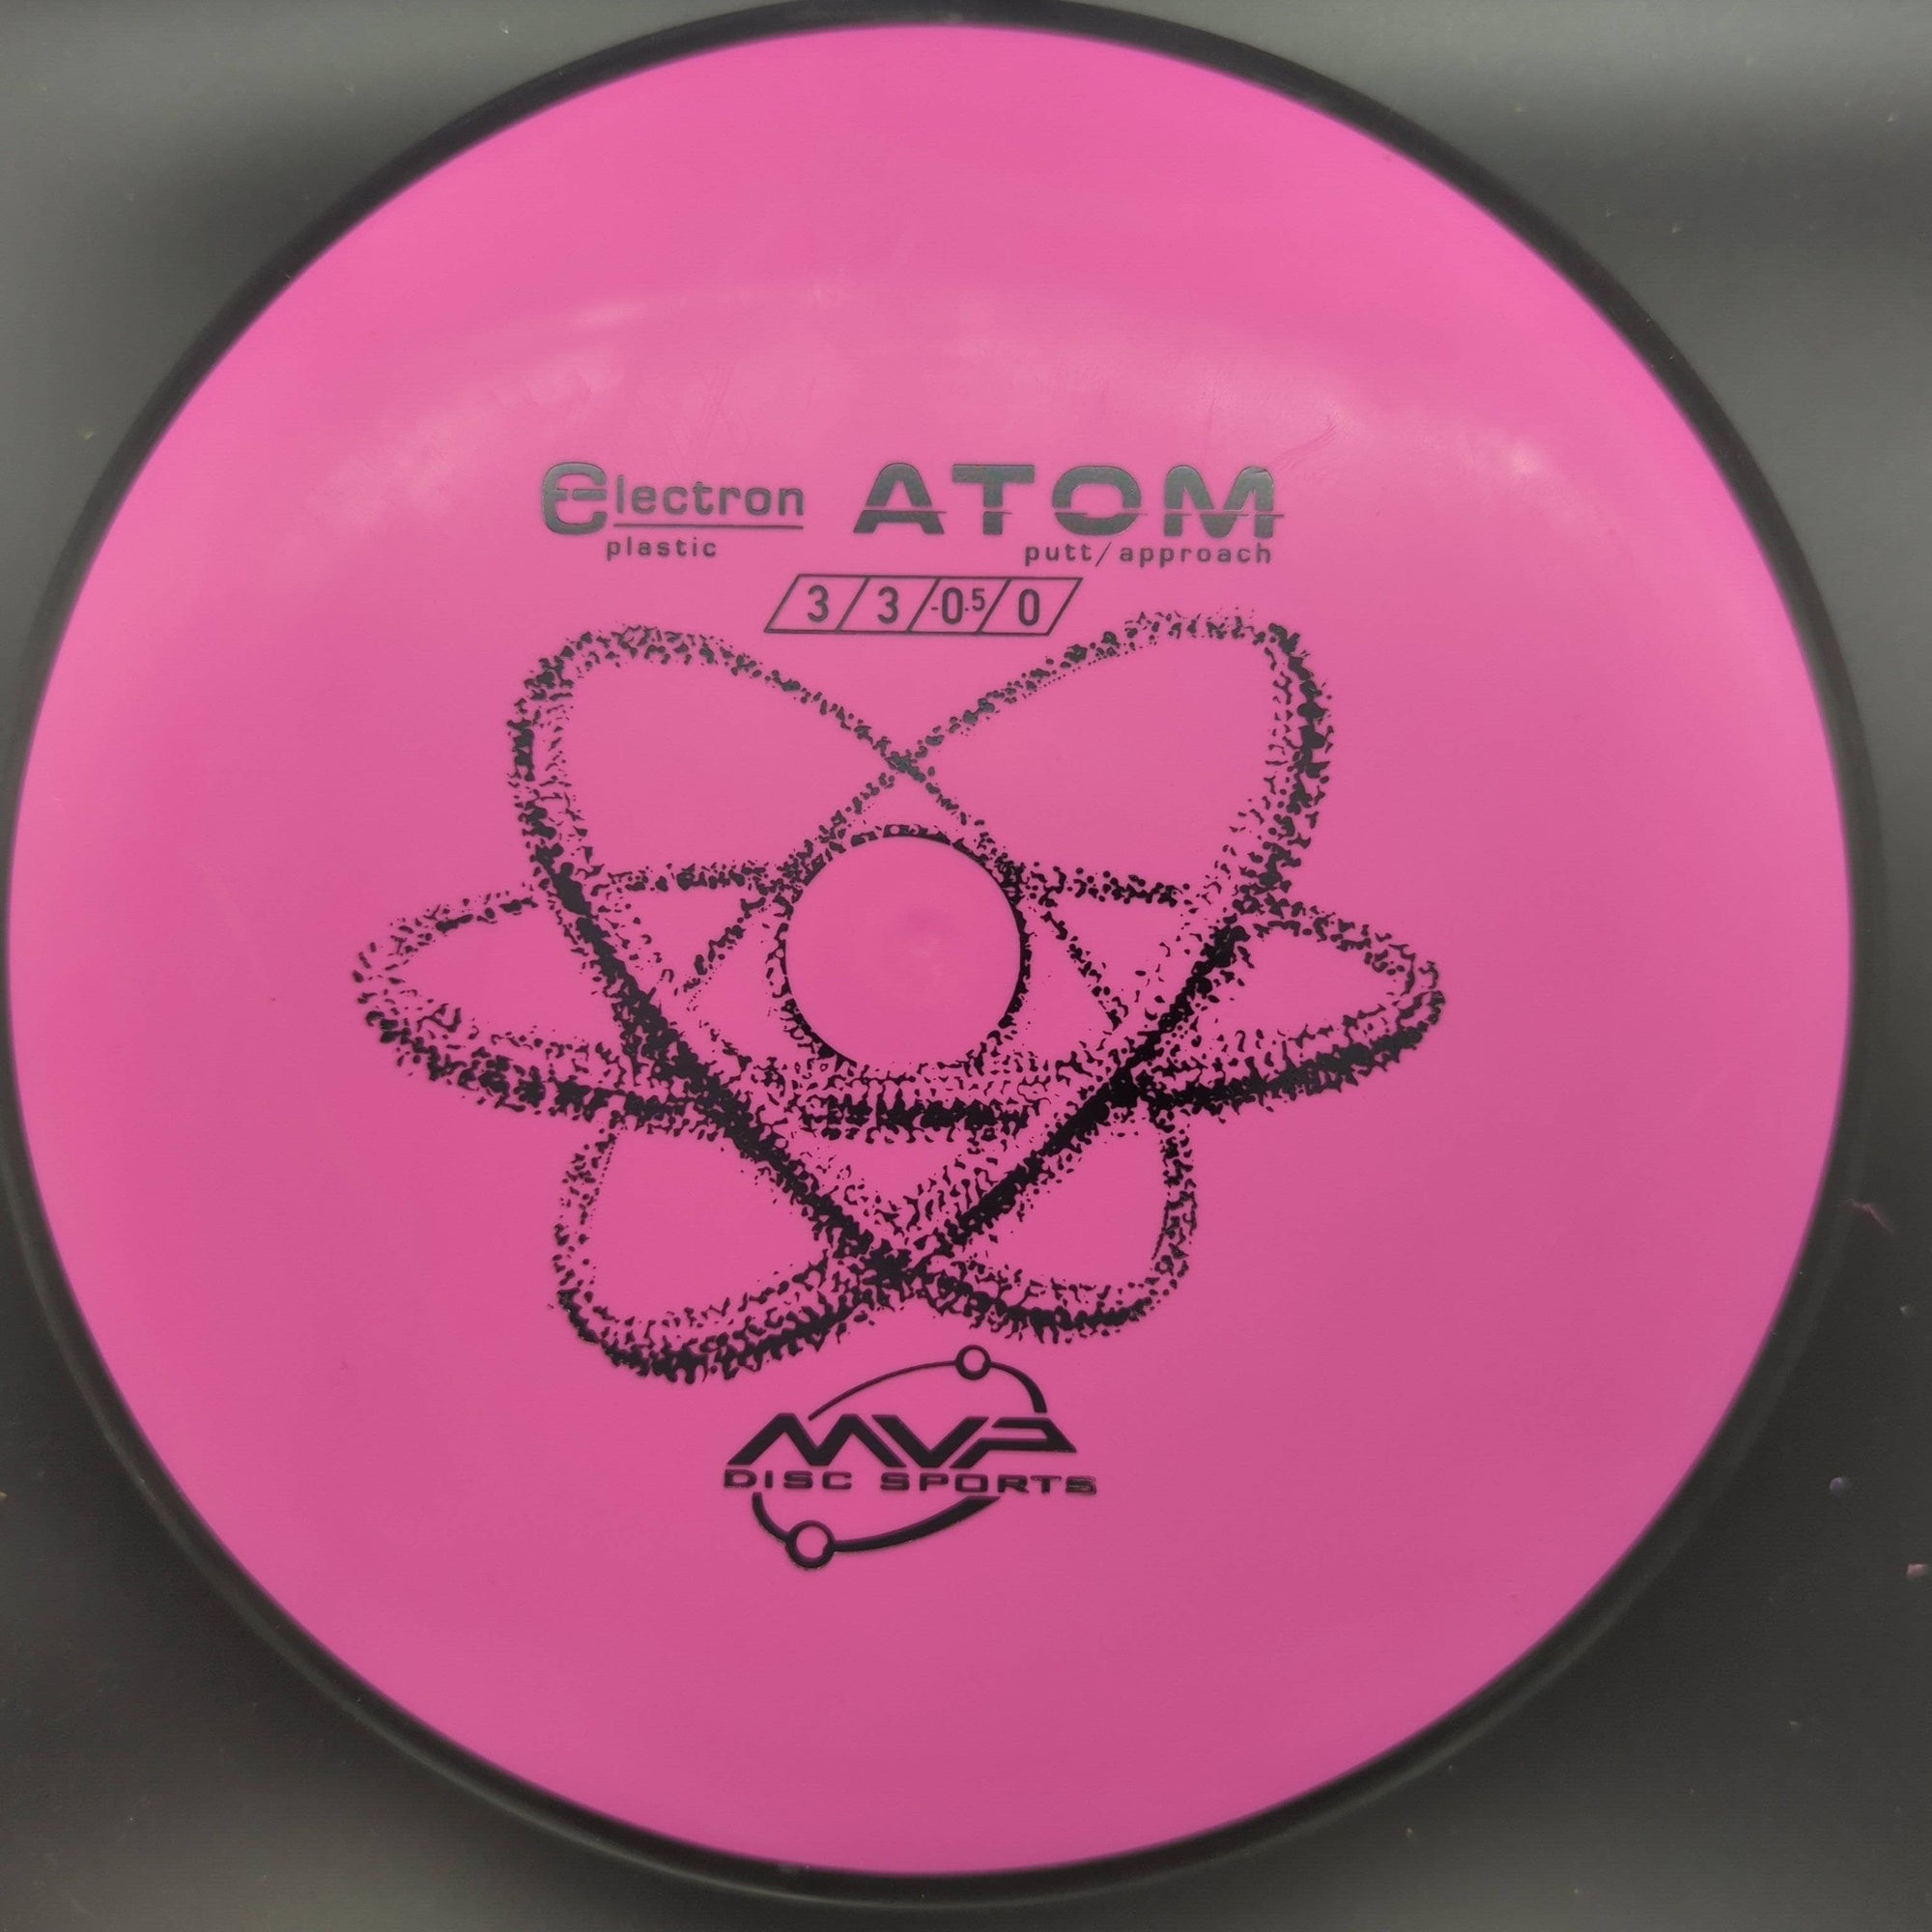 MVP Putter Pink 172g Electron Atom